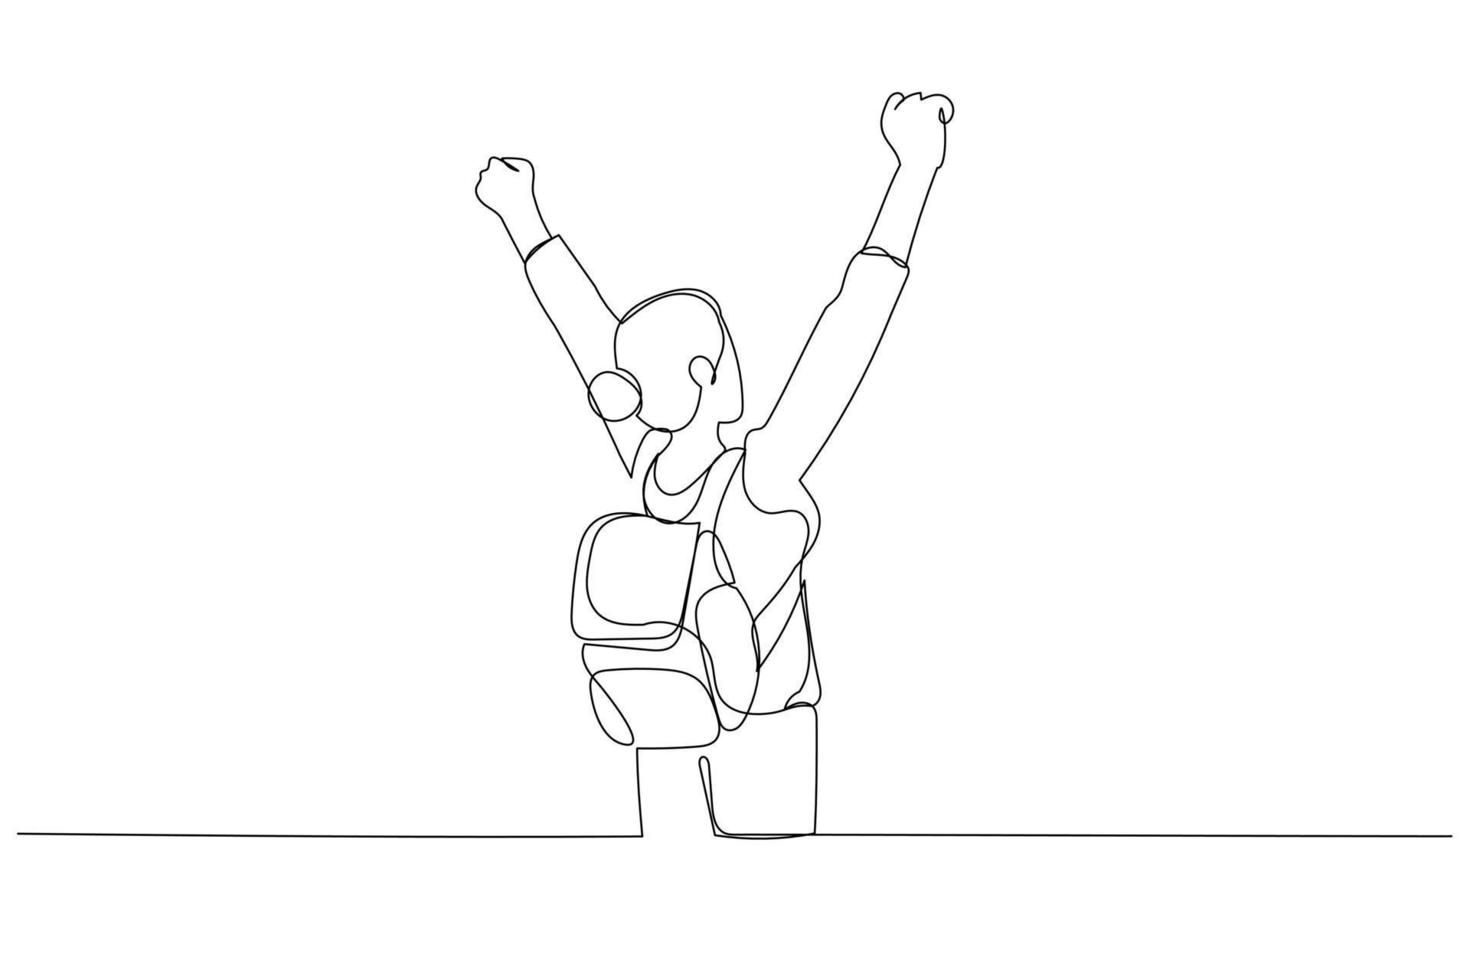 Zeichnung eines Schülers mit in die Luft erhobenen Armen. Kunststil mit durchgehender Linie vektor